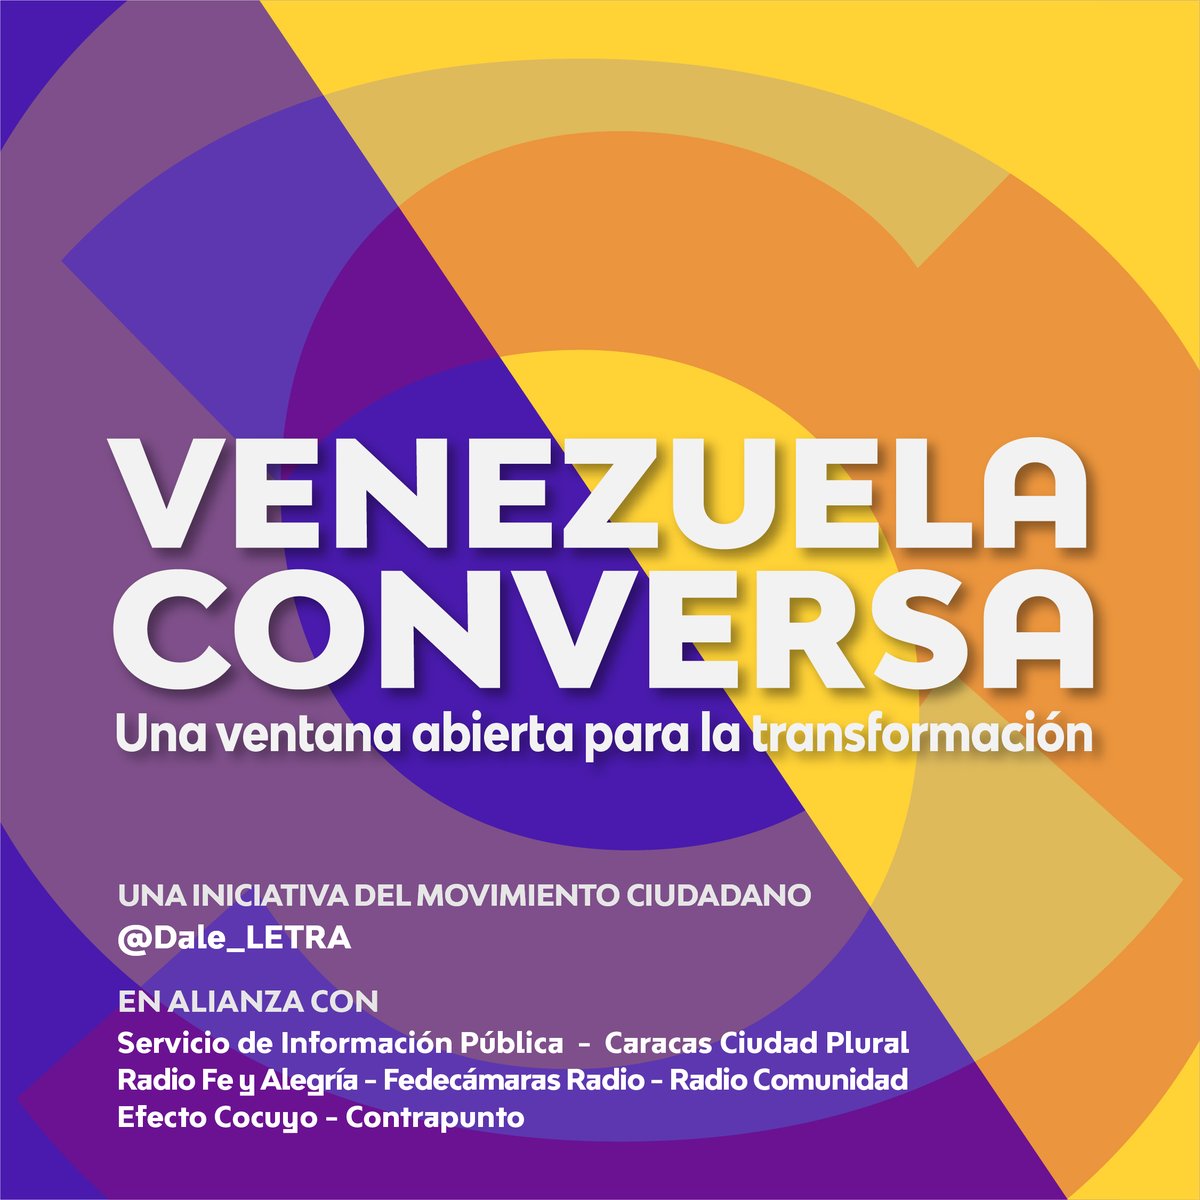 Culmina el 10mo encuentro “Venezuela Conversa: diálogo social”